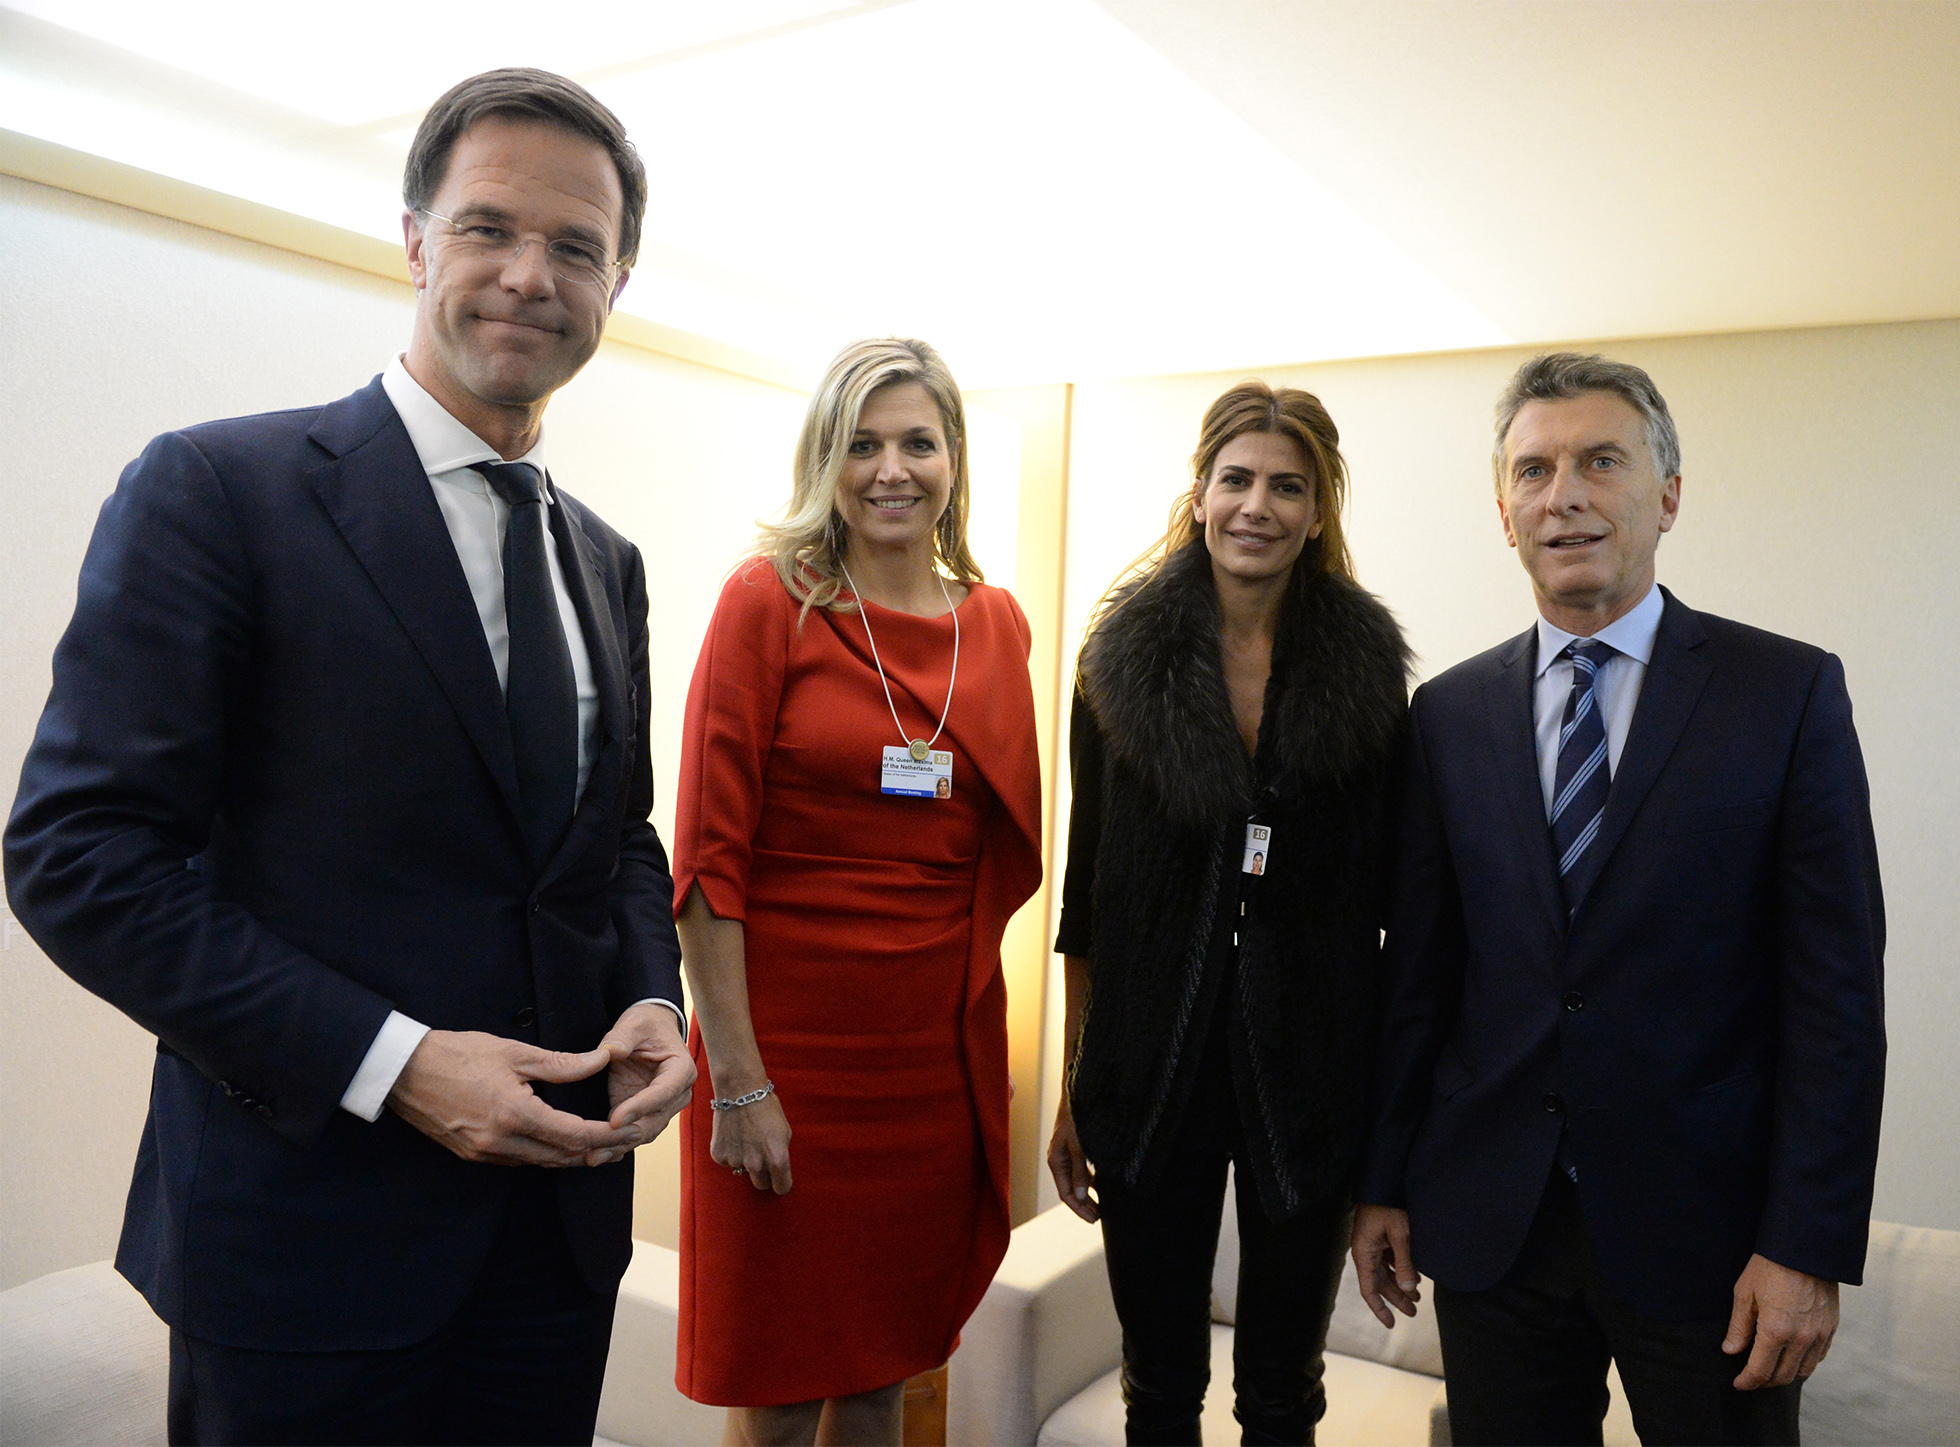 El Presidente, junto a su esposa Julinana Awada, se reunió con la reina Máxima y el Primer Ministro de Holanda.